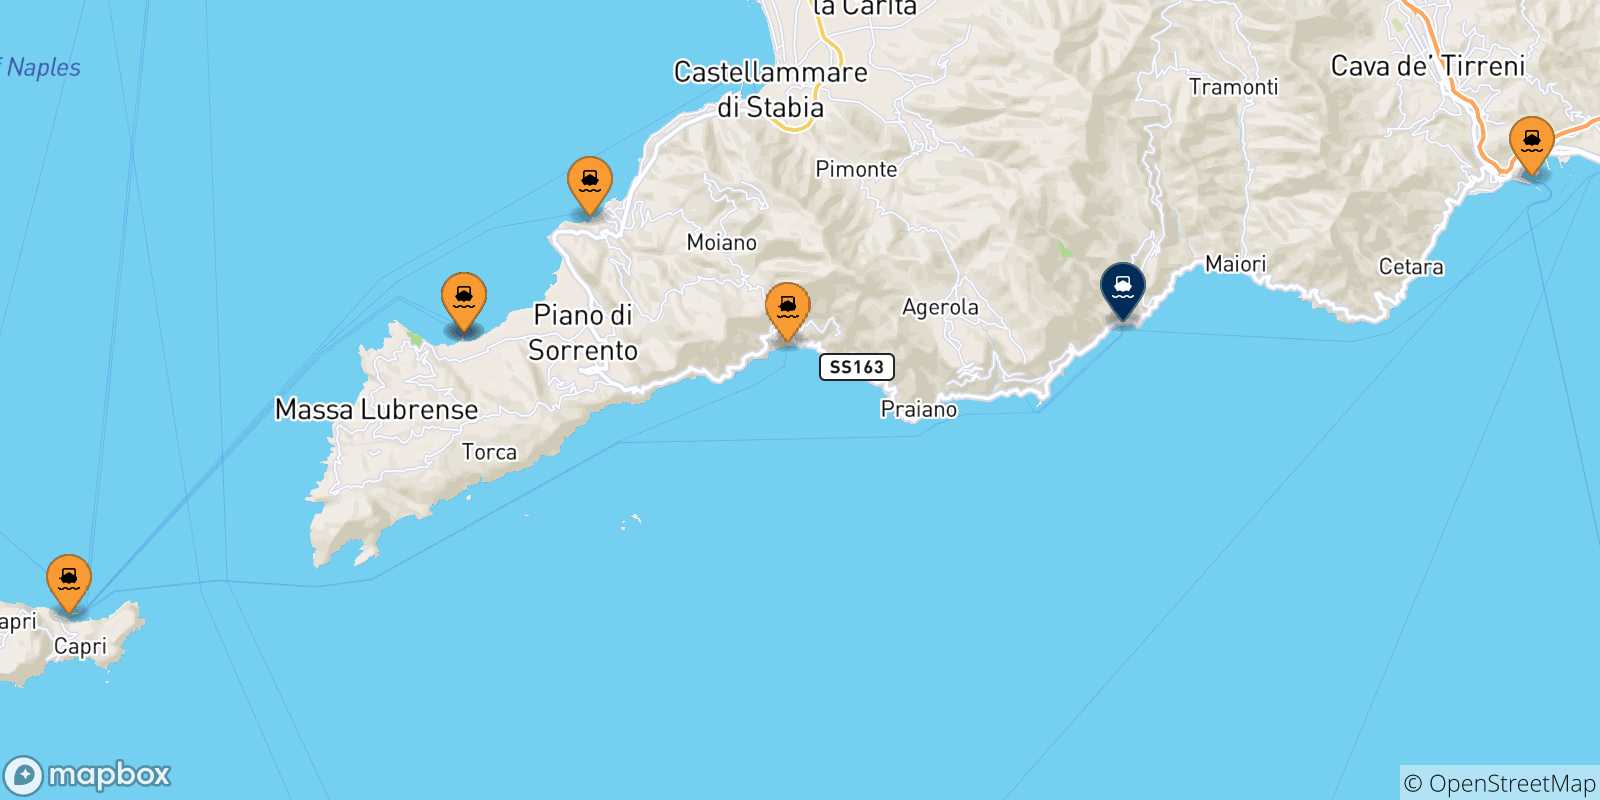 Mapa de las posibles rutas entre Italia y  Amalfi